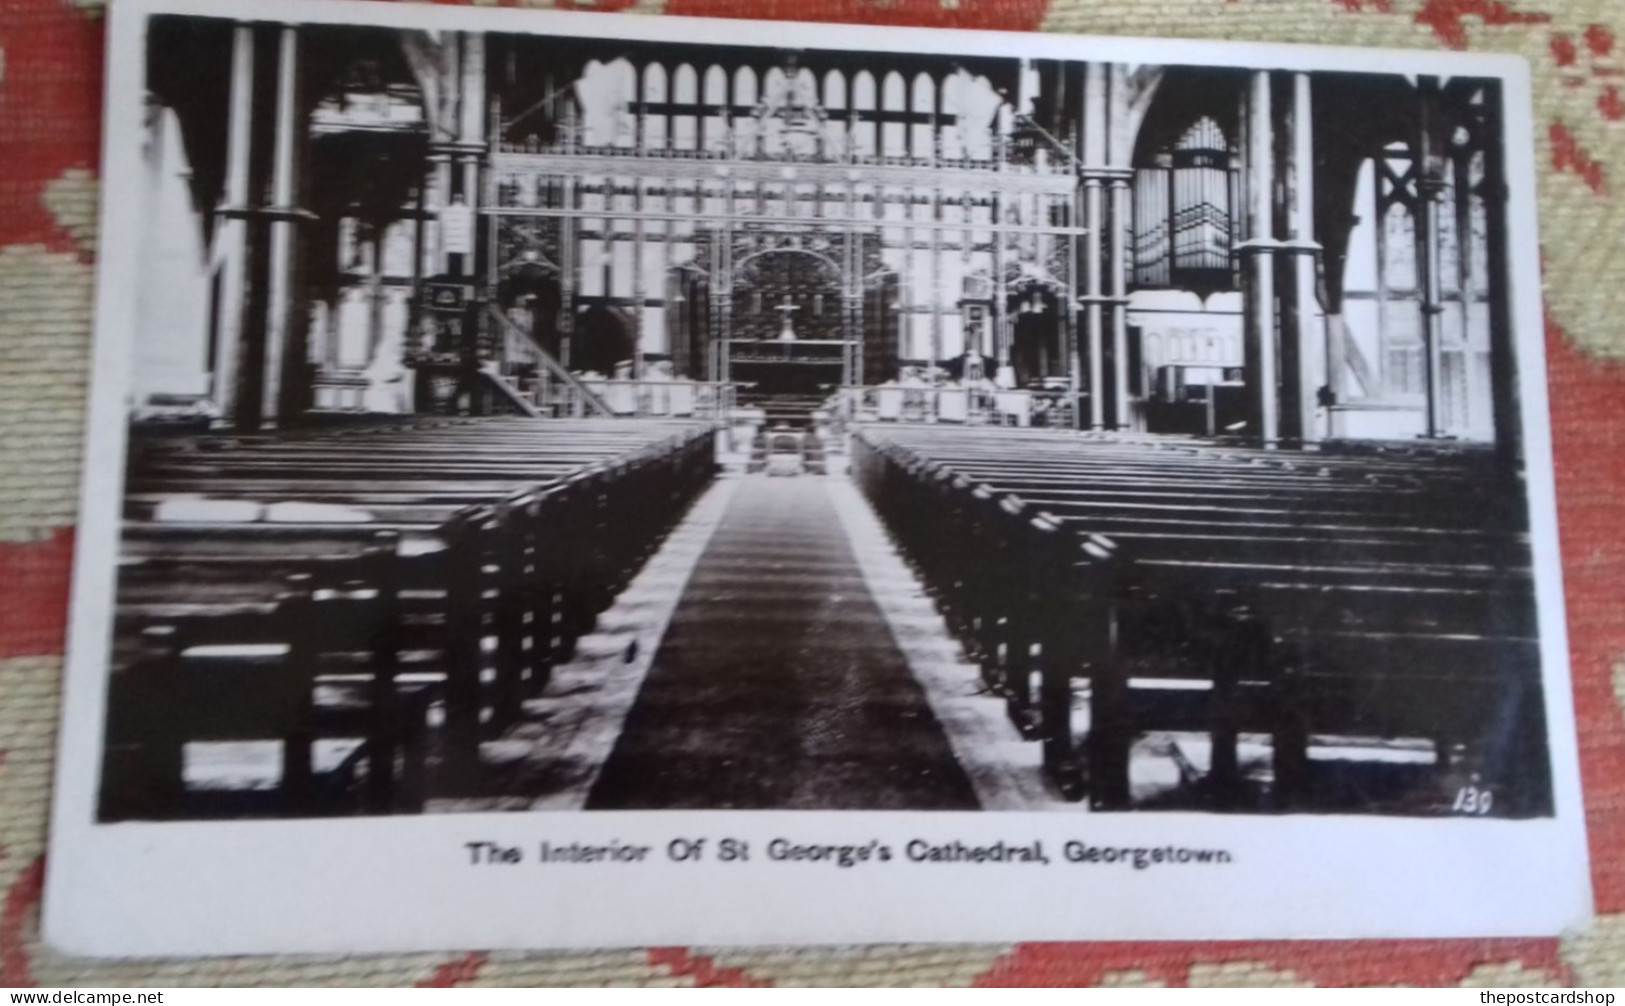 British Guiana Guyana Demerara GEORGETOWN St. George's Cathedral INTERIOR UNUSED - Guyana (ehemals Britisch-Guayana)